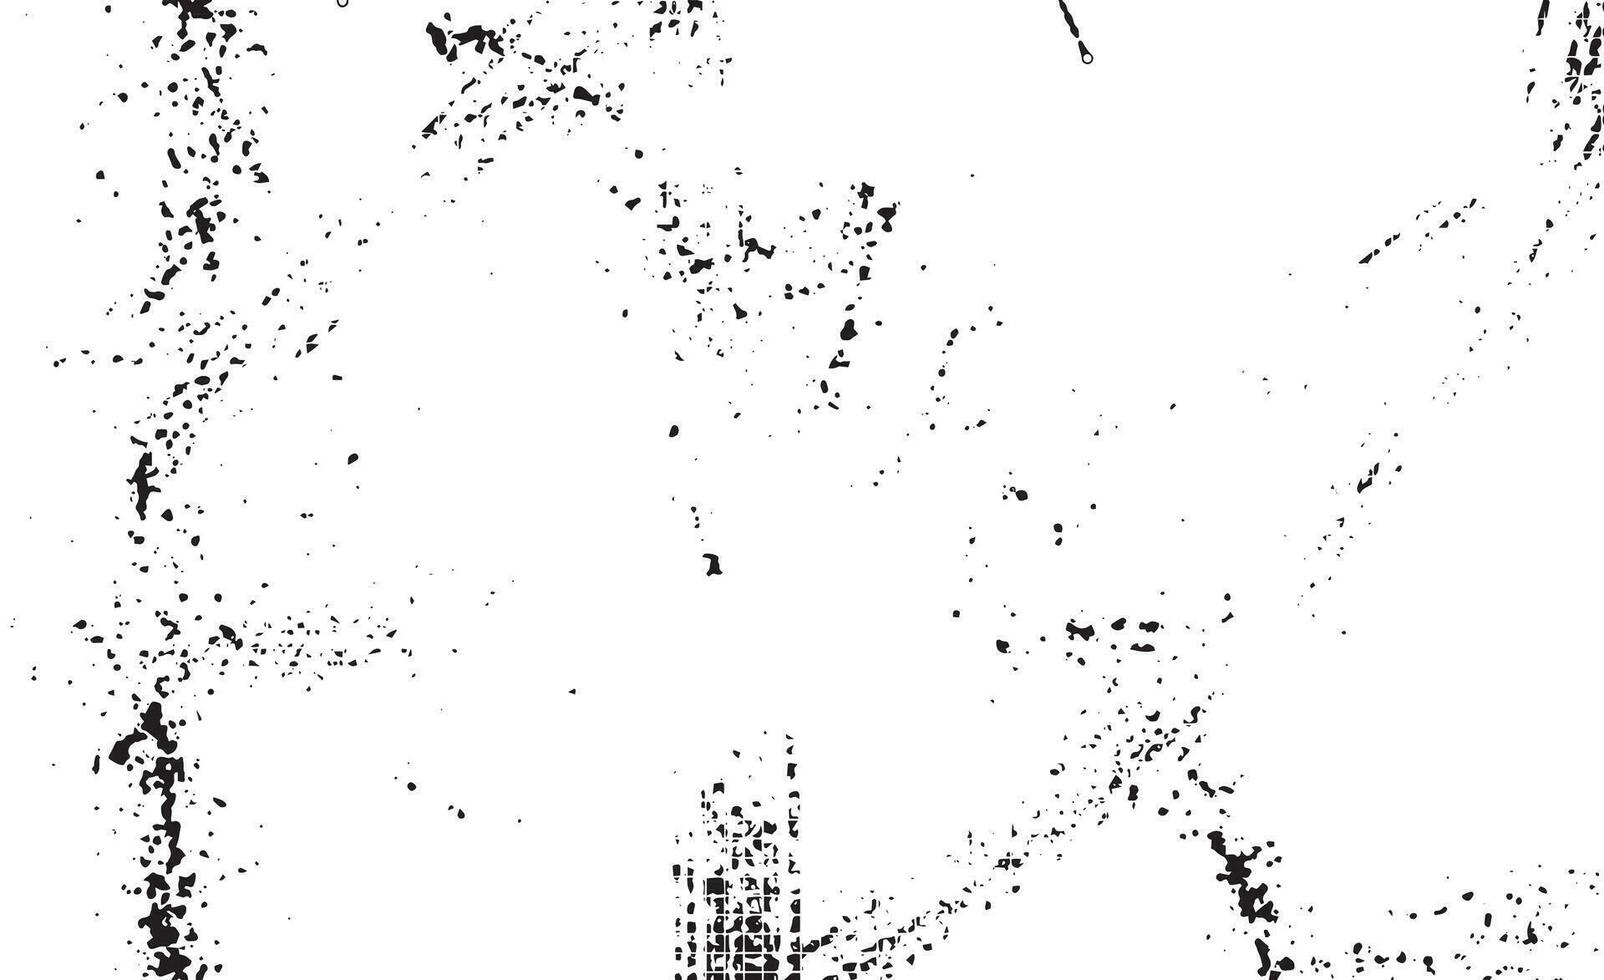 patrón de grunge blanco y negro. textura abstracta de partículas monocromáticas. fondo de grietas, rozaduras, astillas, manchas, manchas de tinta, líneas. superficie de fondo de diseño oscuro. vector